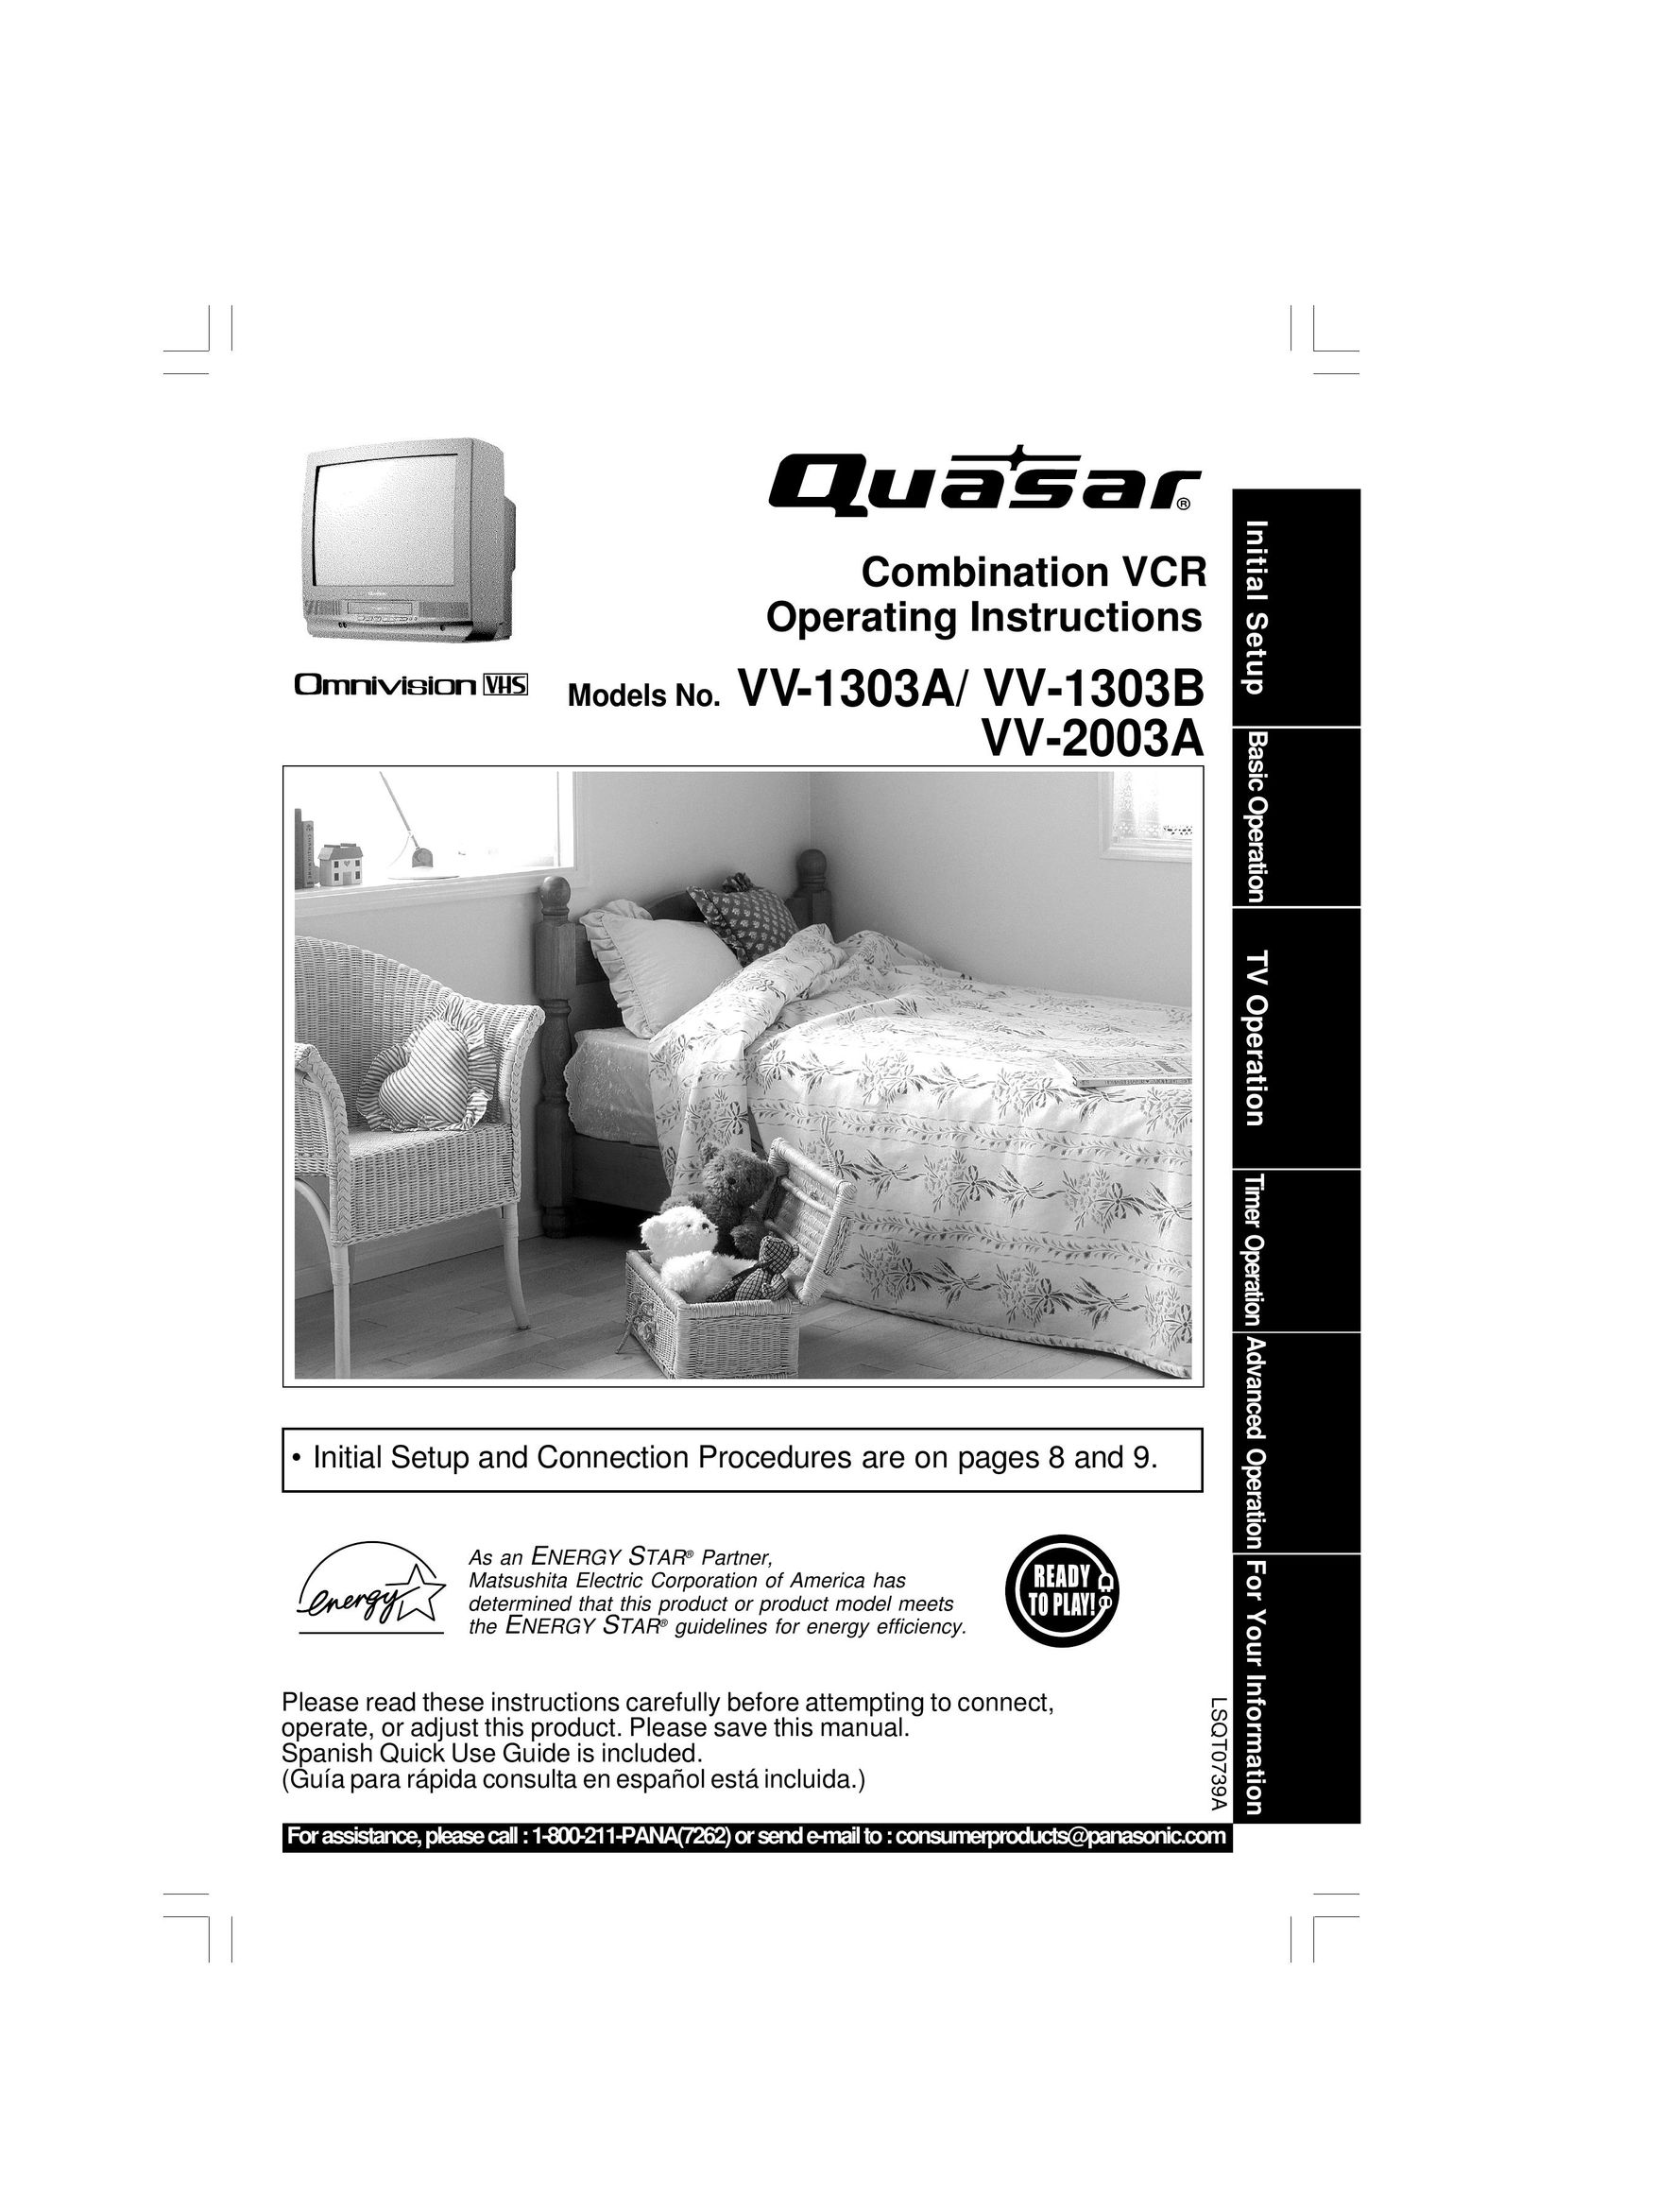 Quasar V V-1303A TV VCR Combo User Manual